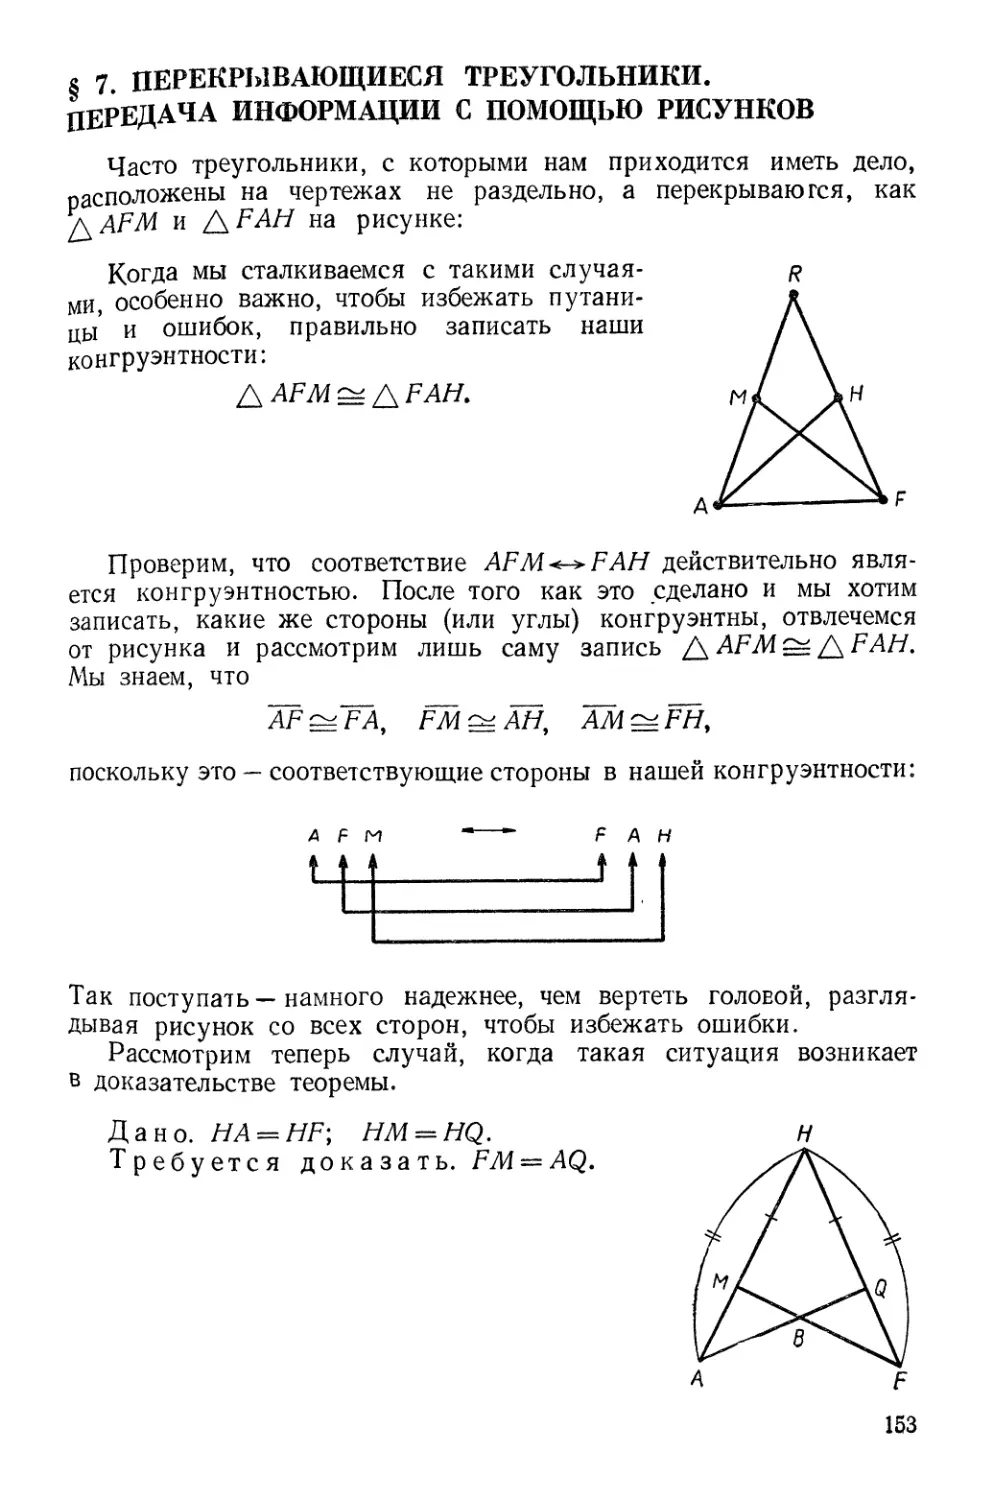 § 7. Перекрывающиеся треугольники. Применение рисунков для передачи информации